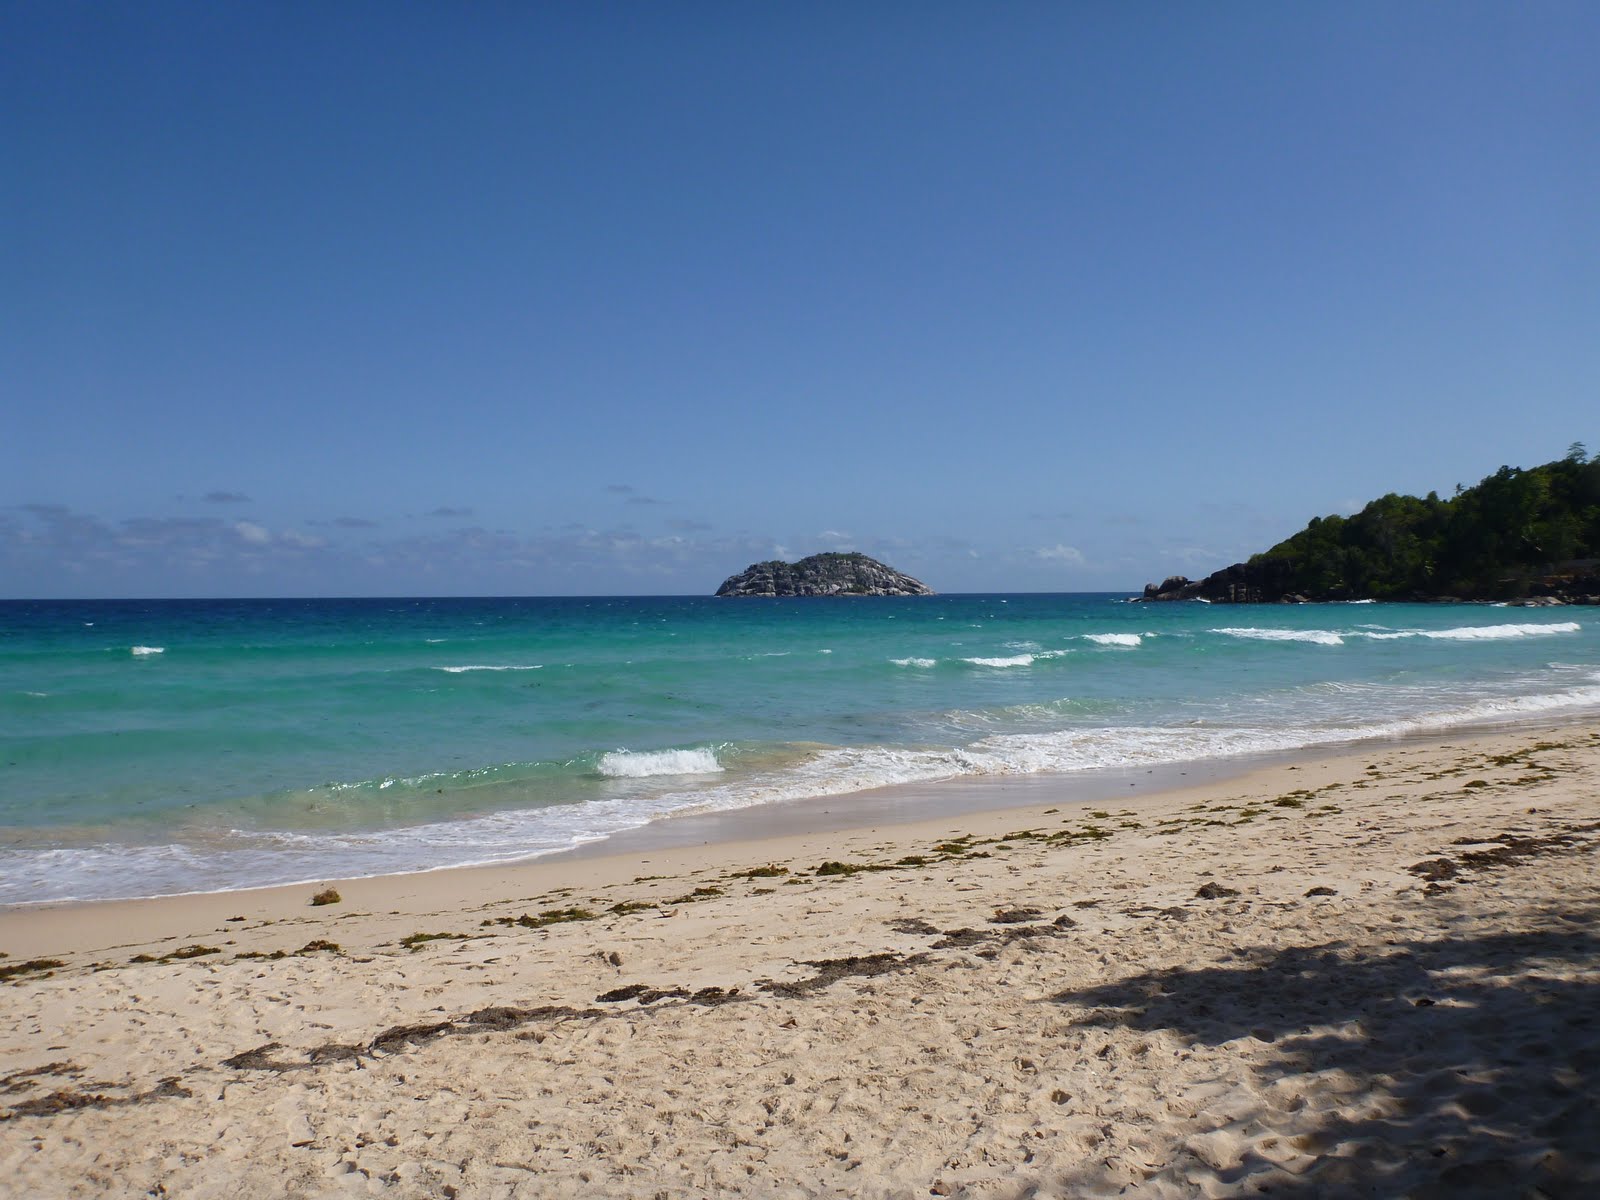 Fotografie cu Grand Anse Beach - locul popular printre cunoscătorii de relaxare